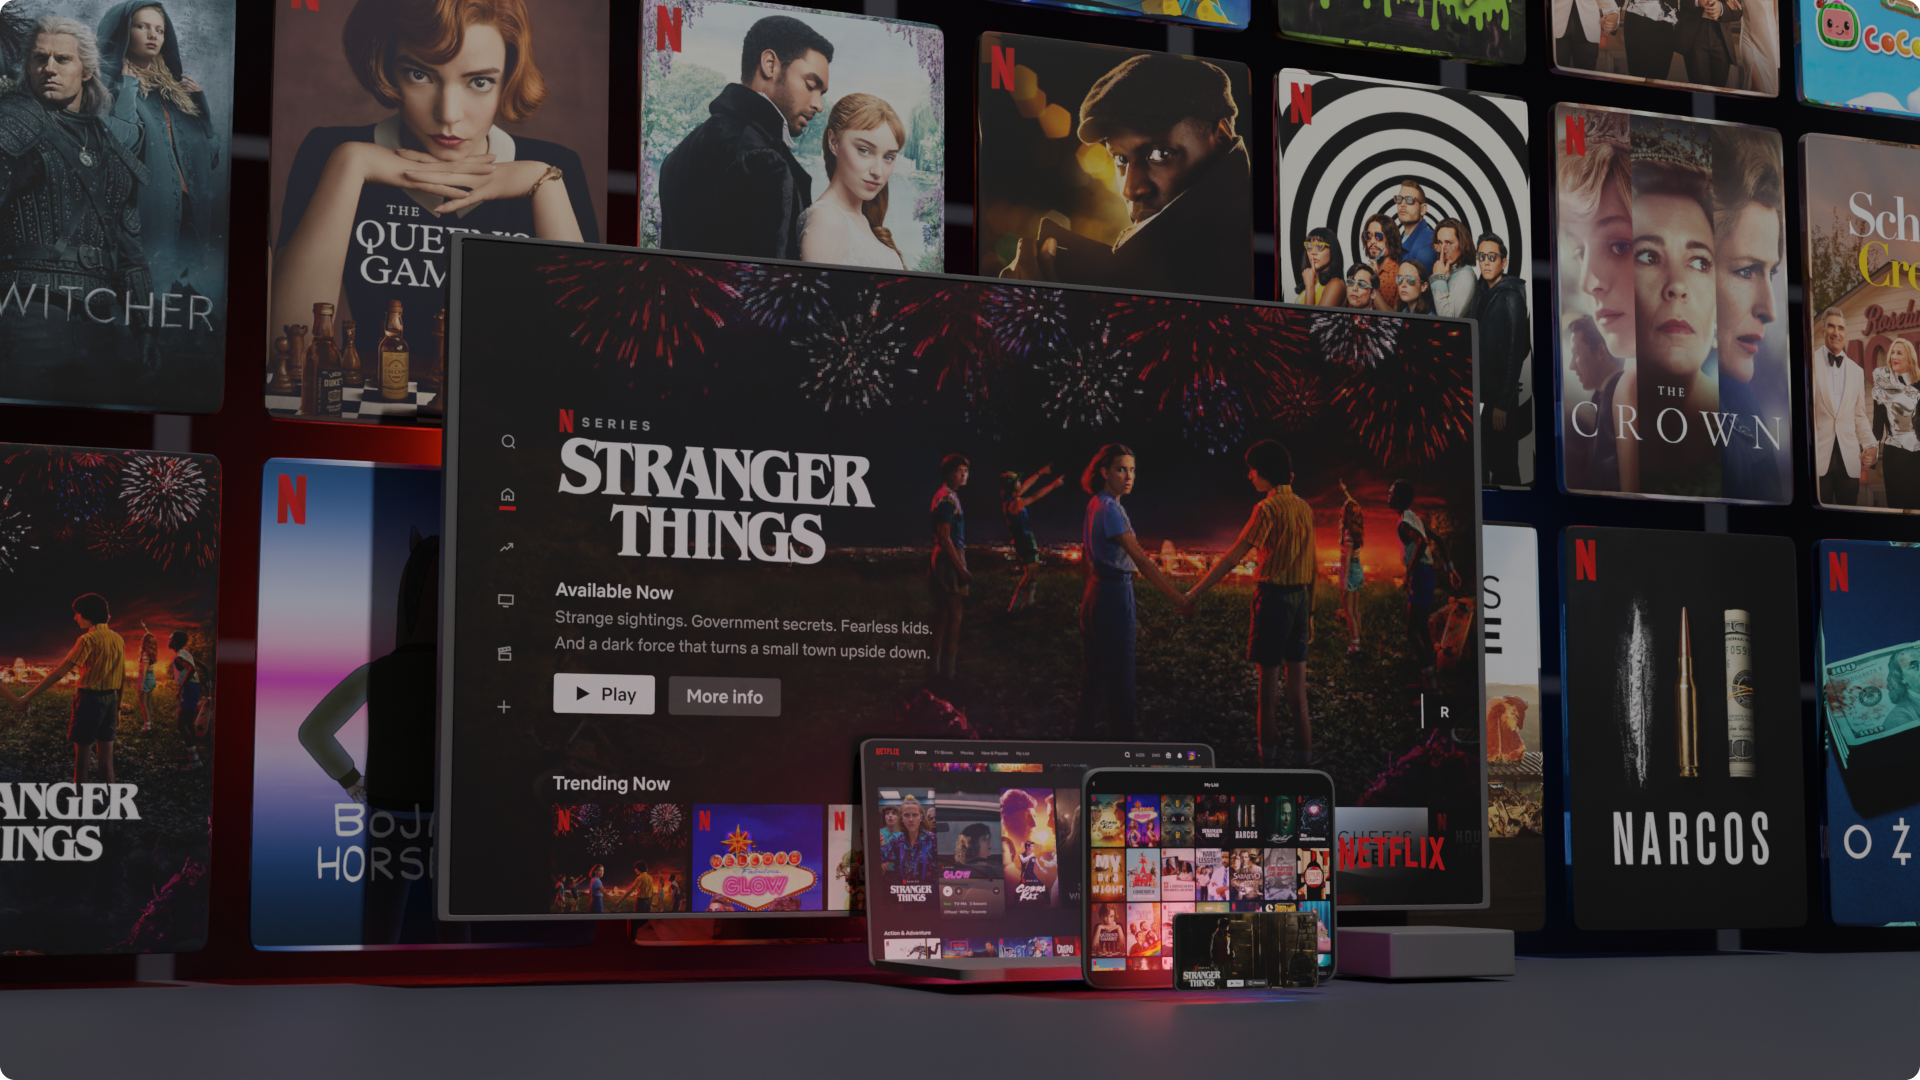 Będzie wielki rekord na Netflix? “Squid Game” może zostać przebite! Ponad miliard godzin oglądania!